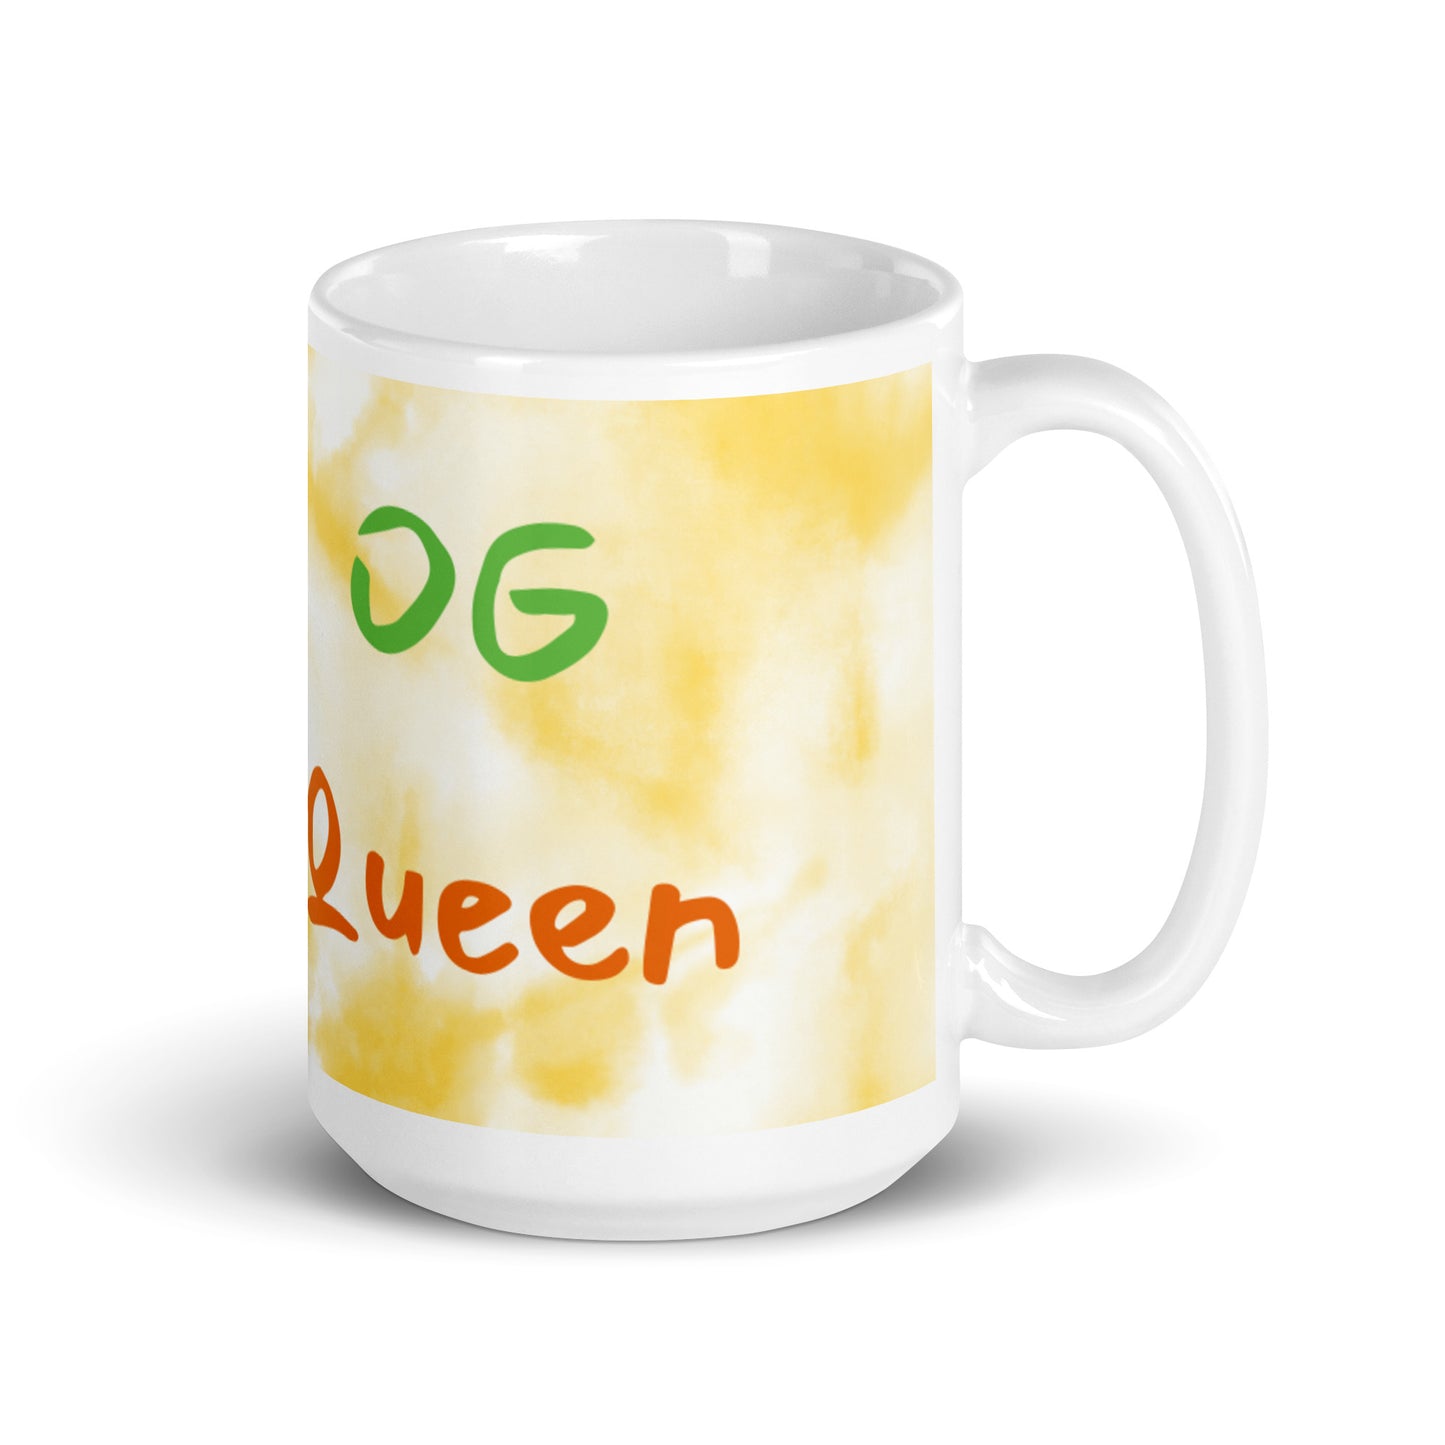 Gold Tie Dye White Glossy Mug - OG Queen